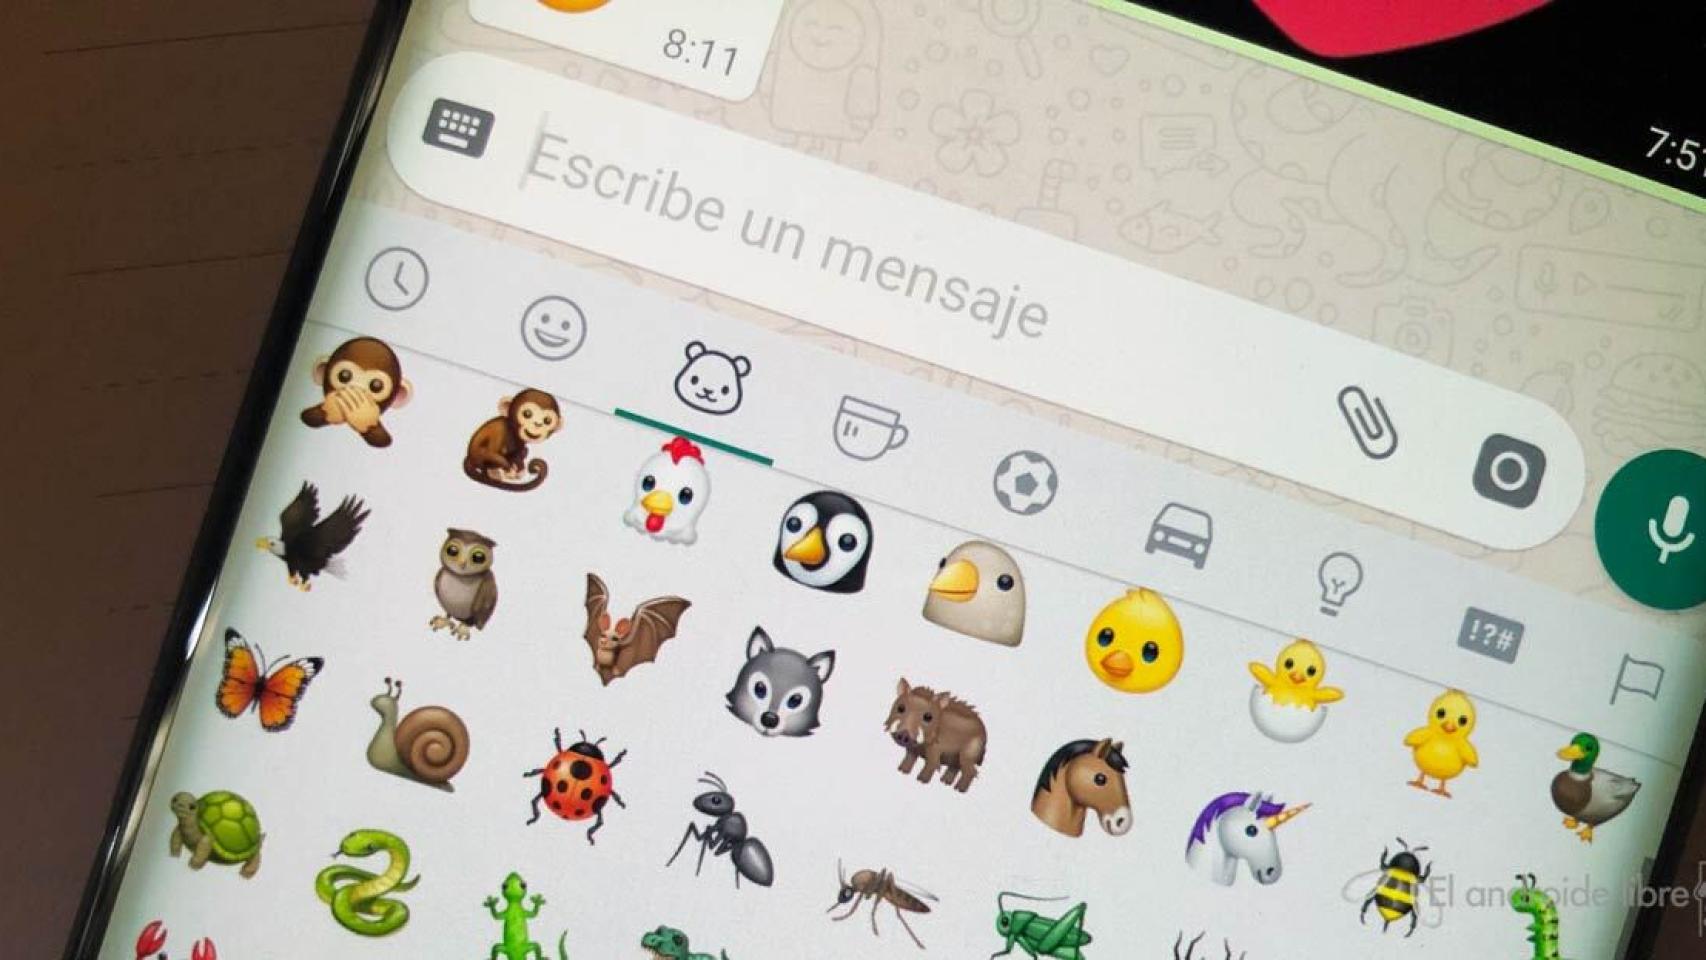 Así son los nuevos emojis de Android 10: más neutros e inclusivos